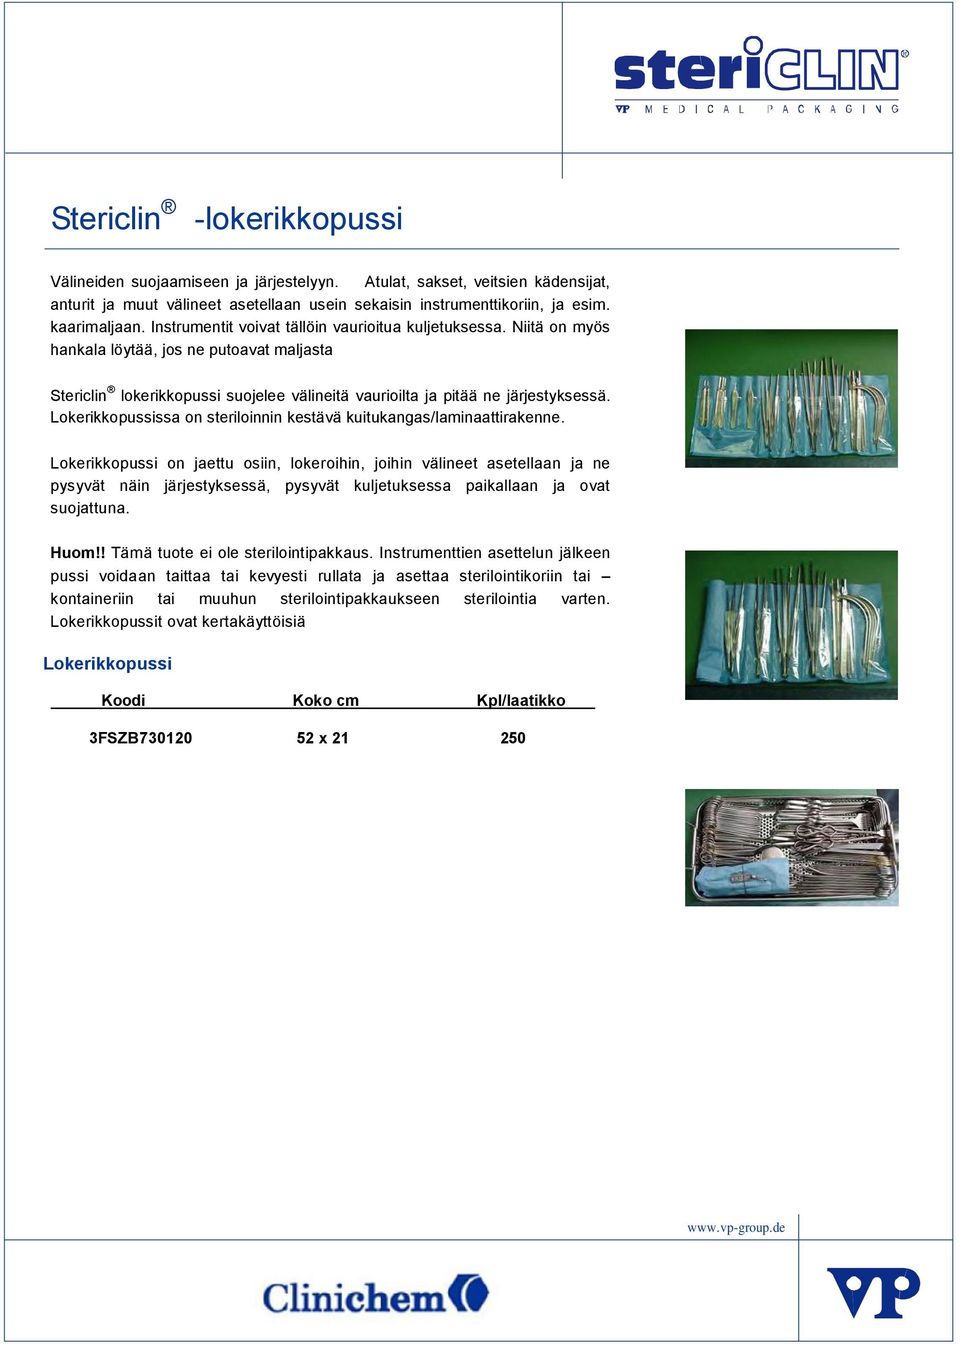 Lokerikkopussissa on steriloinnin kestävä kuitukangas/laminaattirakenne.